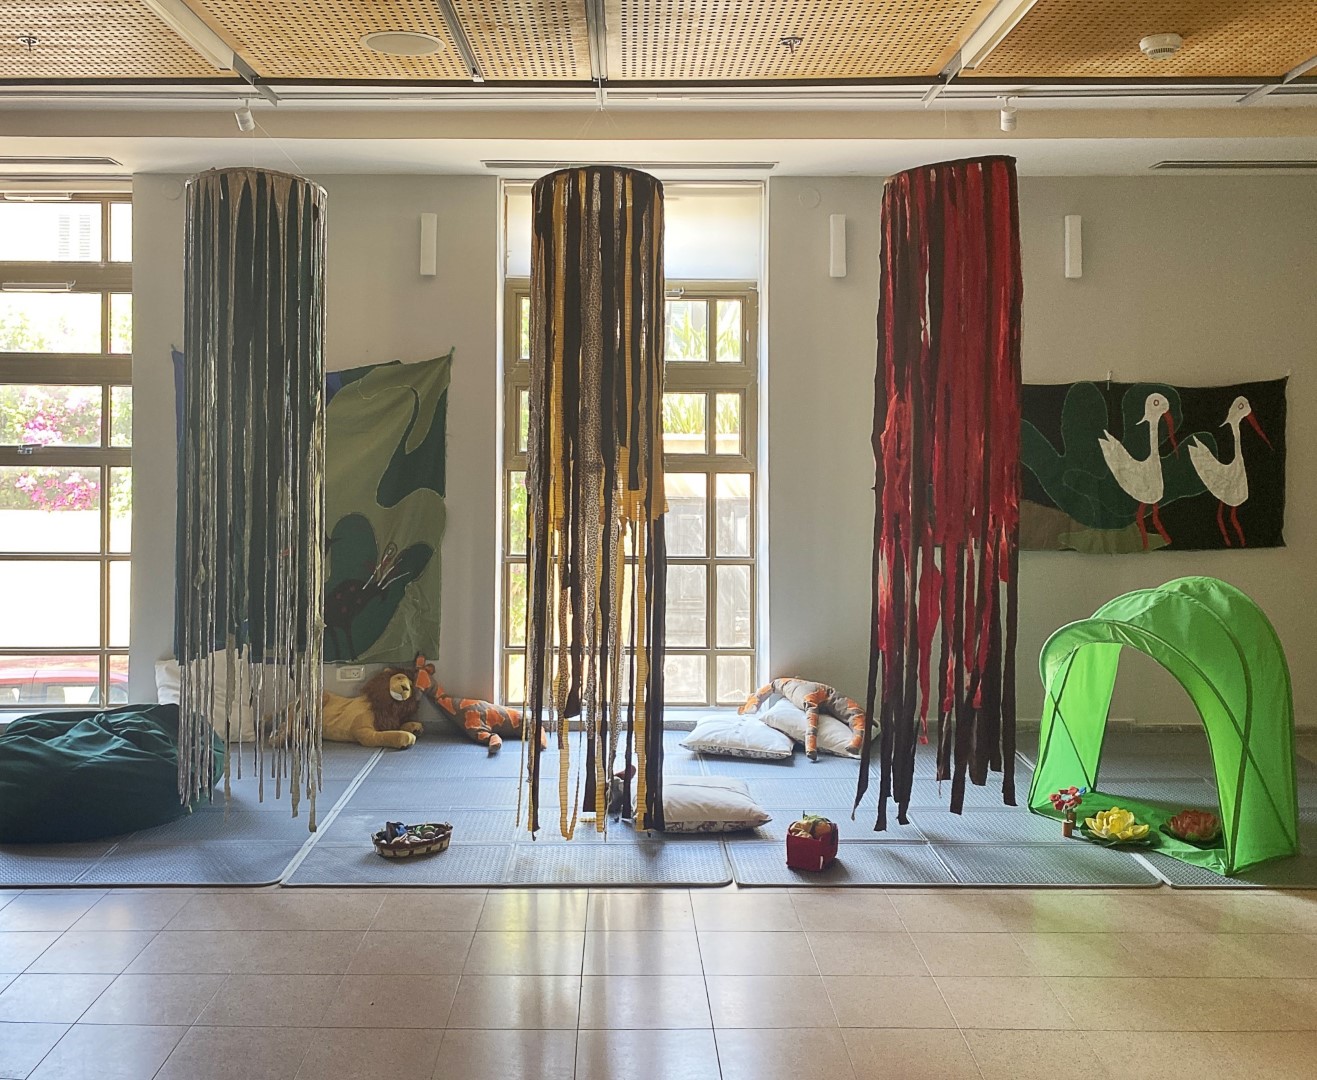 מוזיאון נחום גוטמן לאמנות מציג: אירועי סוכות לגלי הרך, לילדים ולכל המשפחה